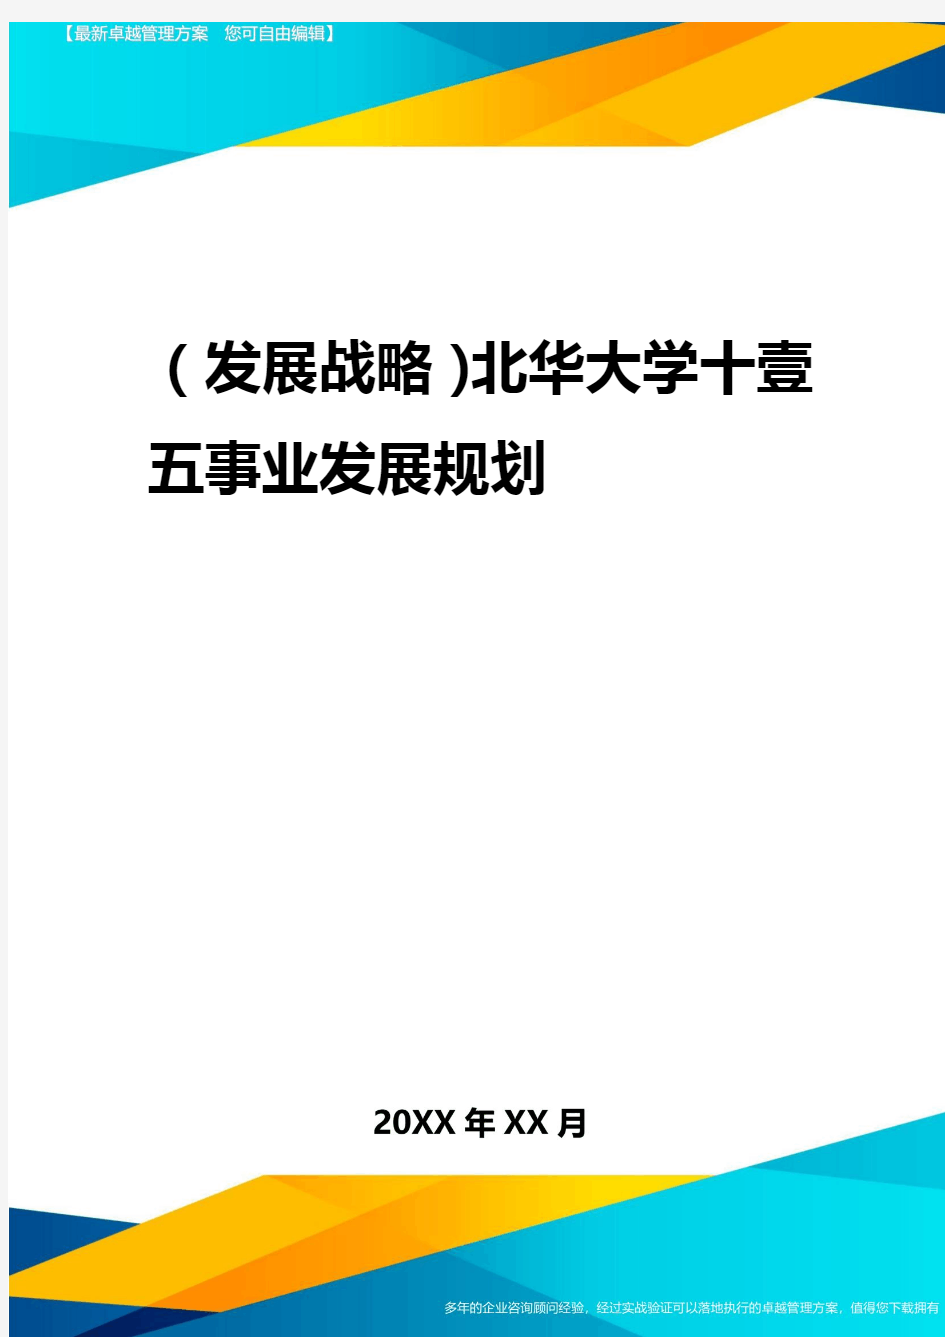 2020年(发展战略)北华大学十一五事业发展规划